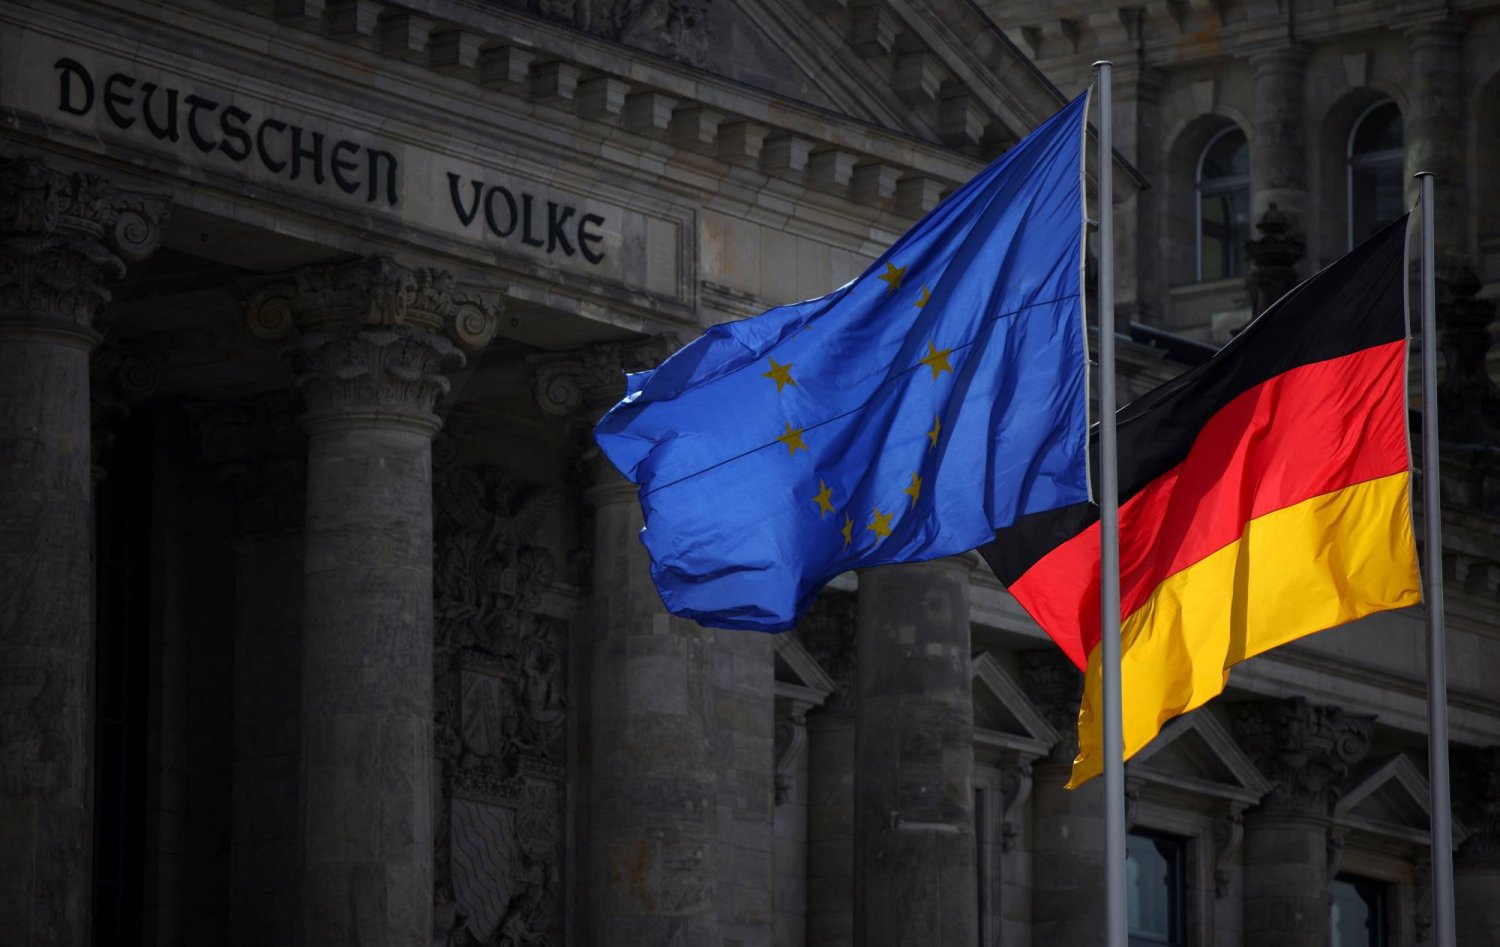 أعلام الاتحاد الأوروبي وألمانيا ترفرف أمام مبنى الرايخستاغ مقر مجلس النواب في البرلمان الألماني في برلين (رويترز)